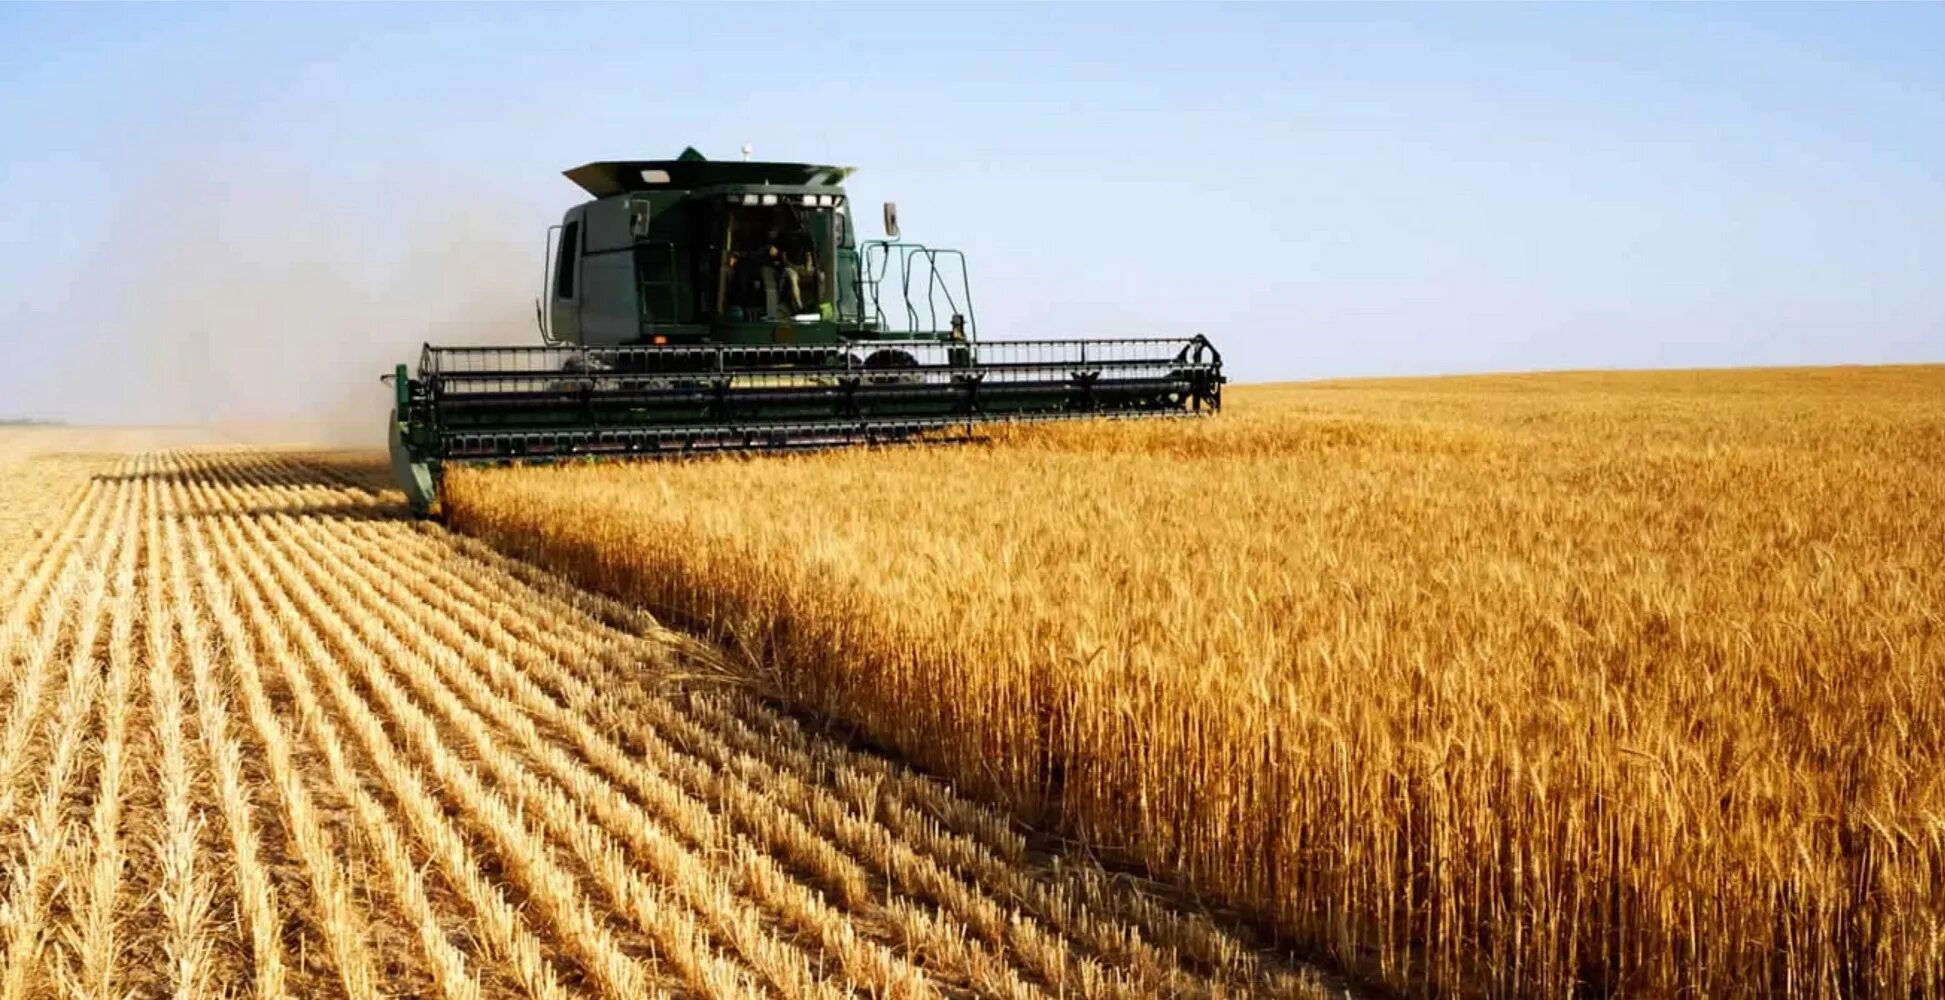 Сельское хозяйство. Сельское хозяйство Растениеводство. Поле пшеницы. Промышленность и сельское хозяйство. Крупное сельскохозяйственное производство